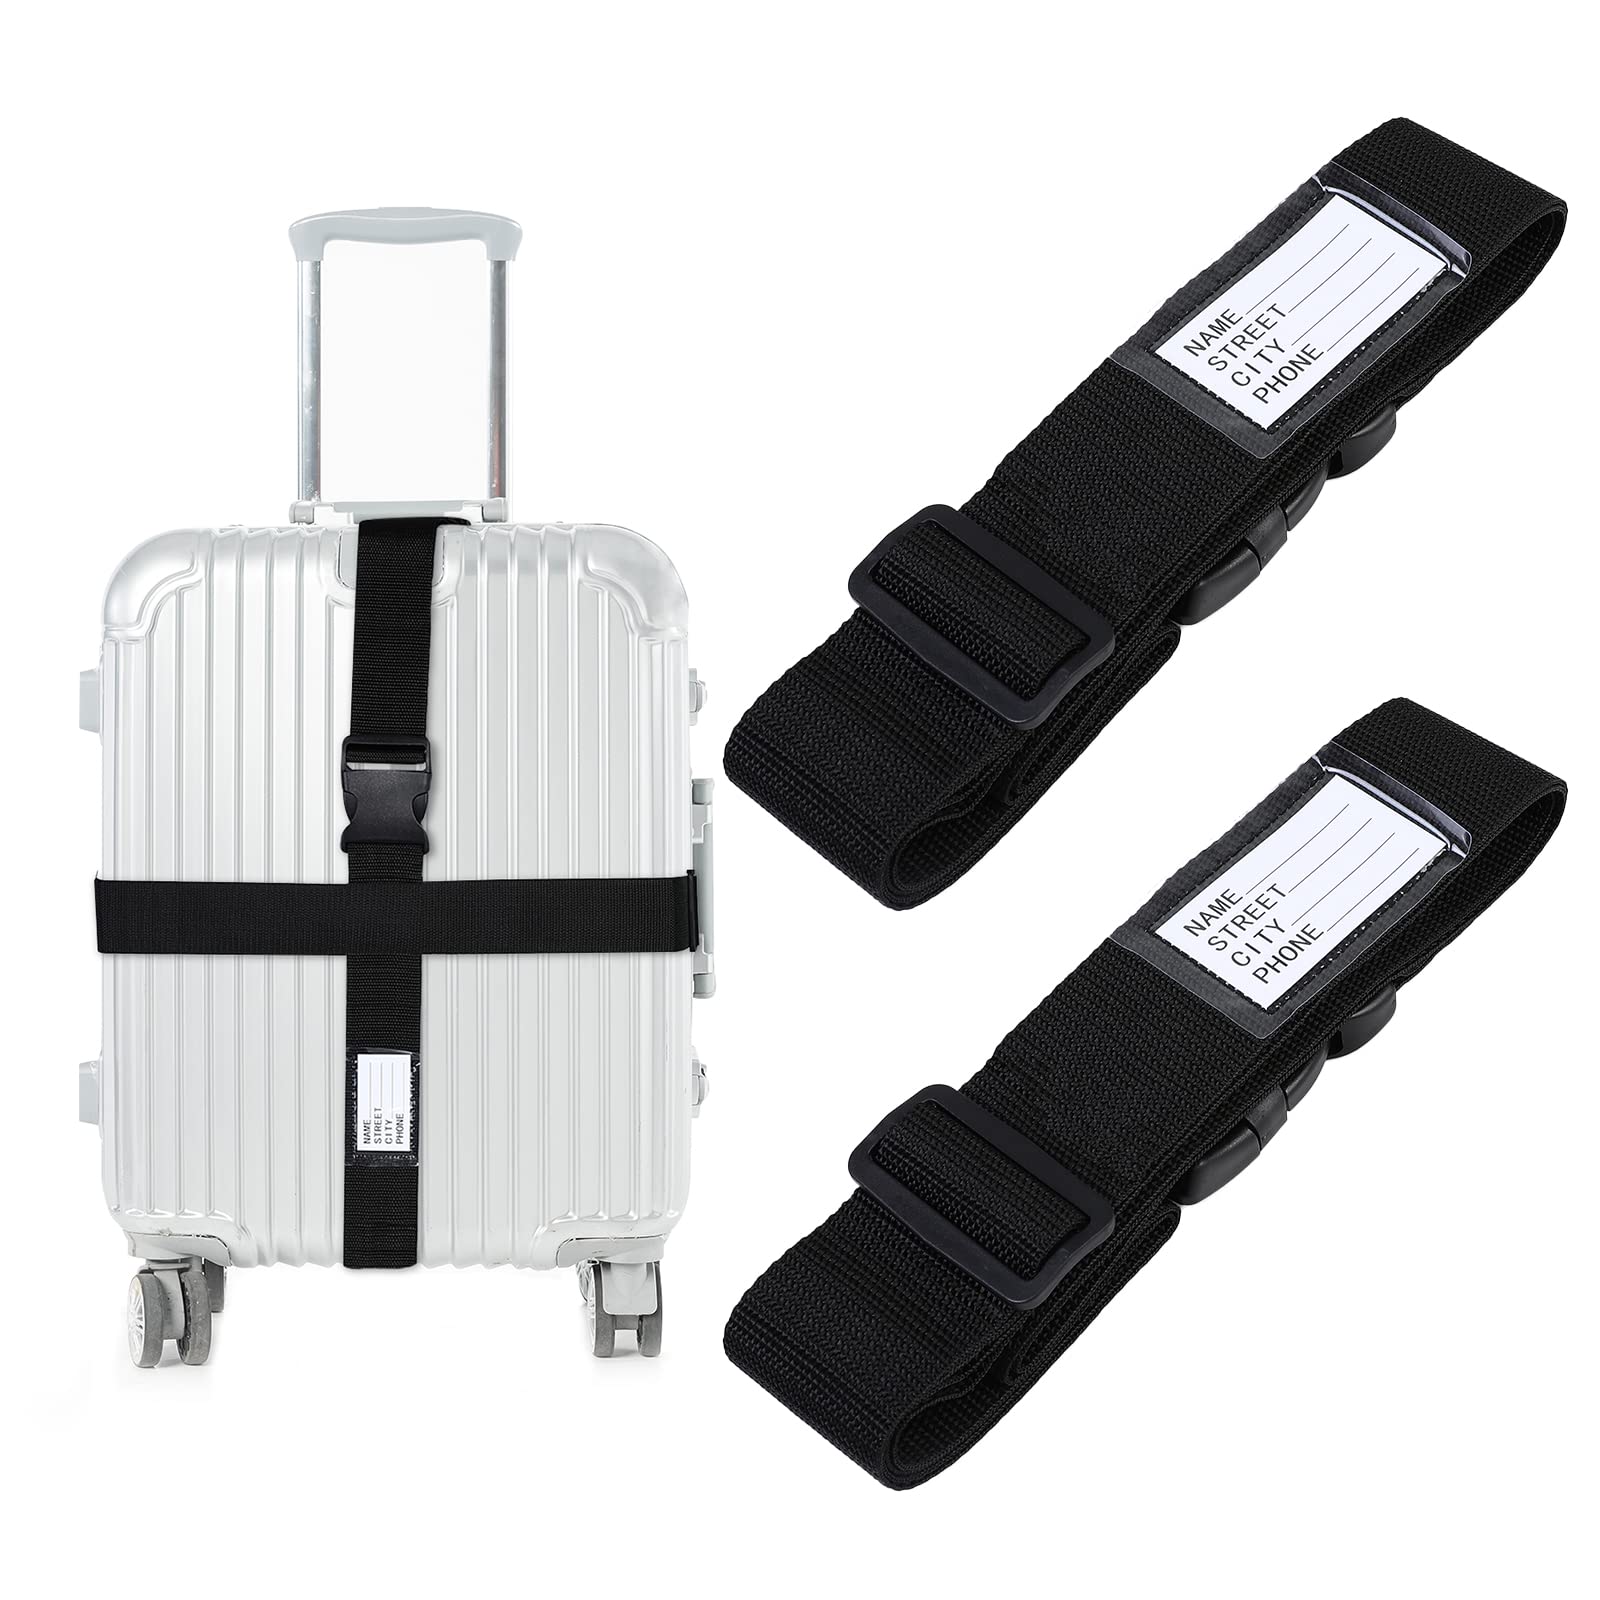 AiQInu Koffergurt Kofferband Koffergurte 2 Stück Einstellbare Kofferband Gurt mit Namensschildern und Adresse Gepäckgurt Luggage Strap für Koffer Rucksack Reisezubehör von AiQInu